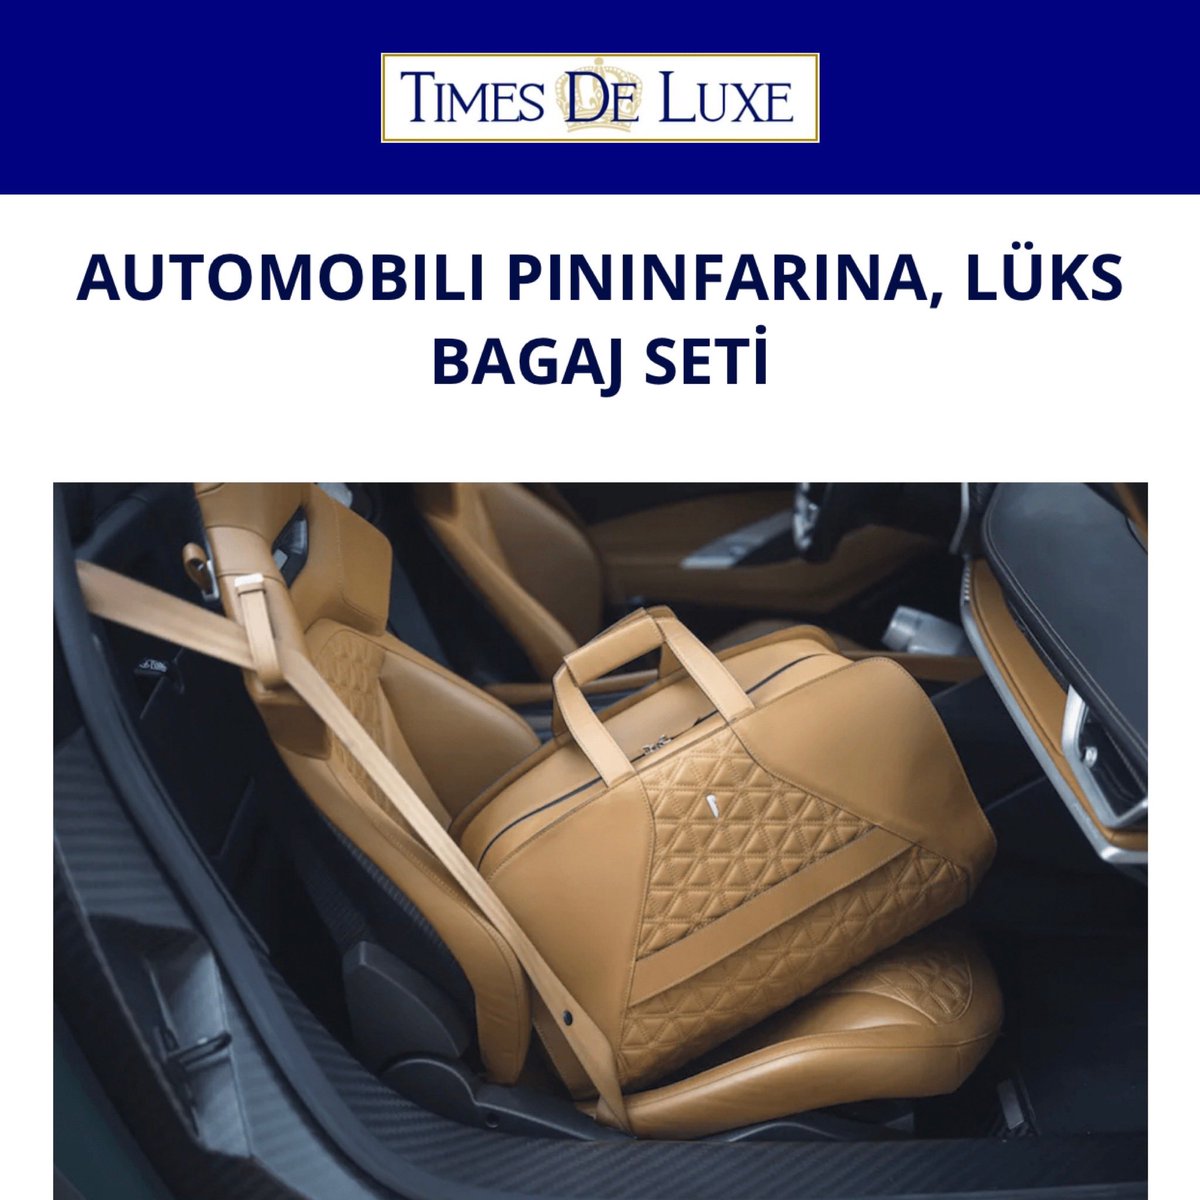 Automobili Pininfarina, Battista hyper GT’nin ısmarlama iç ve dış tasarımına uyacak şekilde dört parçalı lüks bir bagaj seti yarattı. 

#automobilipininfarina # #pininfarina #automobili #battista #araba #otomobil #lüks #luxury #luxurycars #timesdeluxe

timesdeluxe.com/automobili-pin…